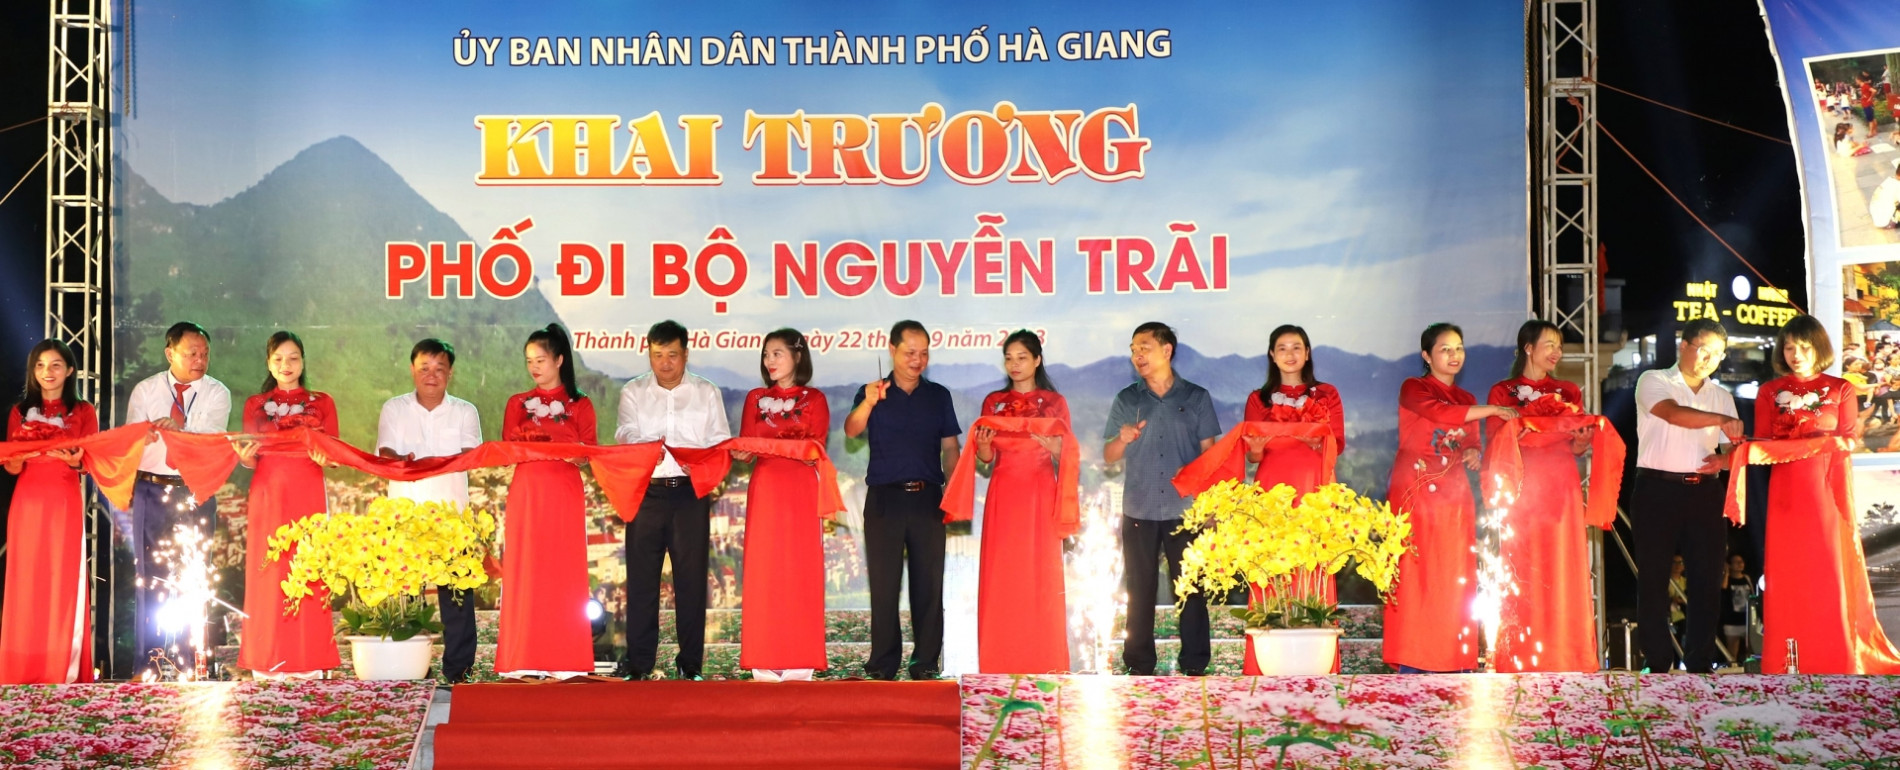 Các đồng chí lãnh đạo thành phố Hà Giang cắt băng khai trương Phố đi bộ Nguyễn Trãi.